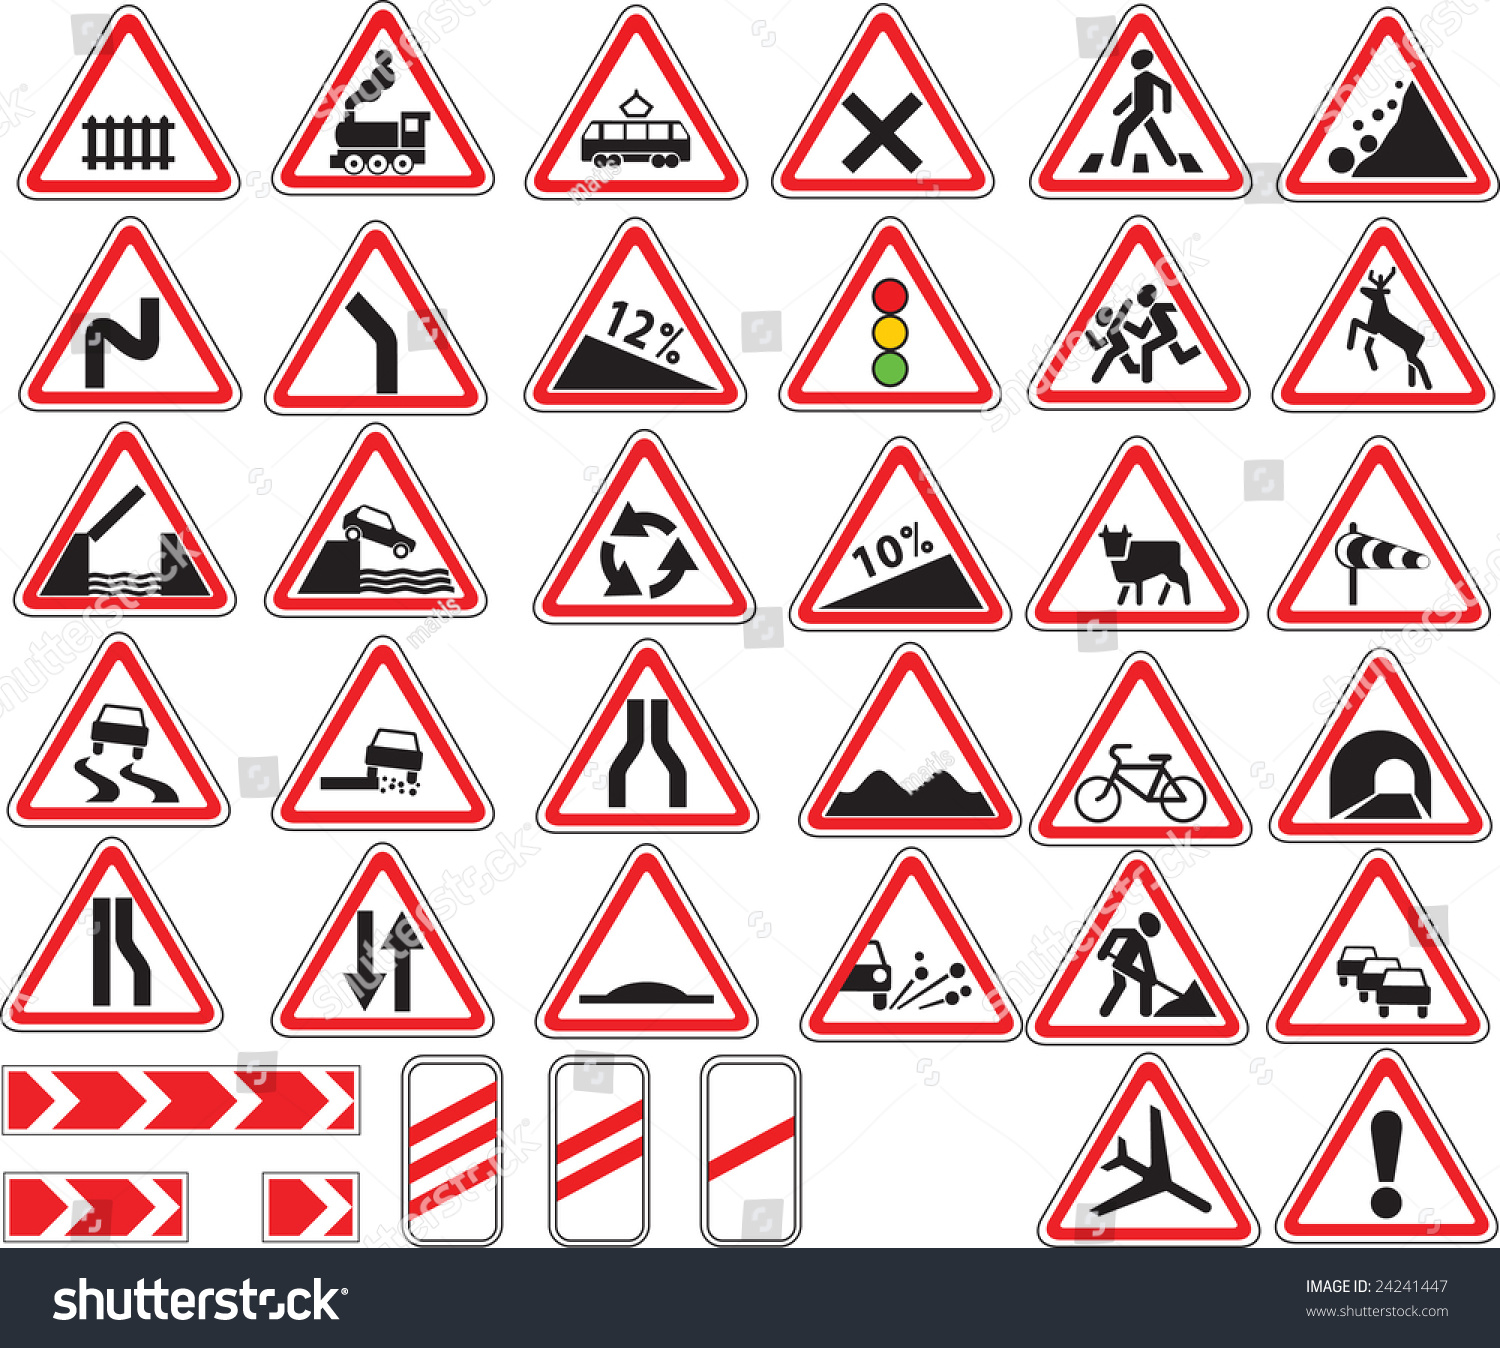 Warning Traffic Signs Stock Vector 24241447 - Shutterstock